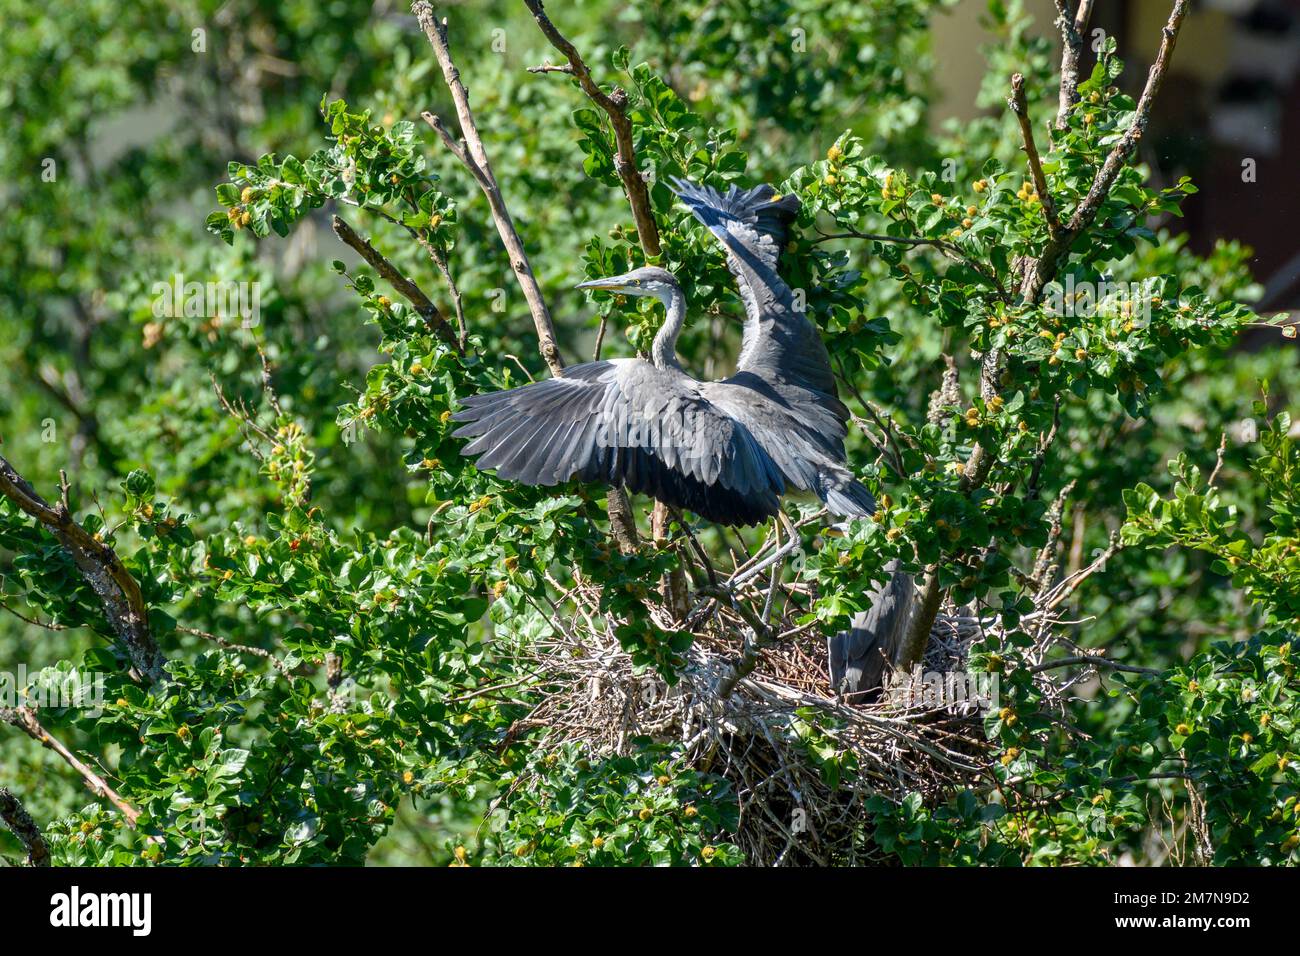 Héron gris (Ardea cinerea) également héron, vue d'un nid avec de jeunes hérons gris, environ 8 semaines. Banque D'Images